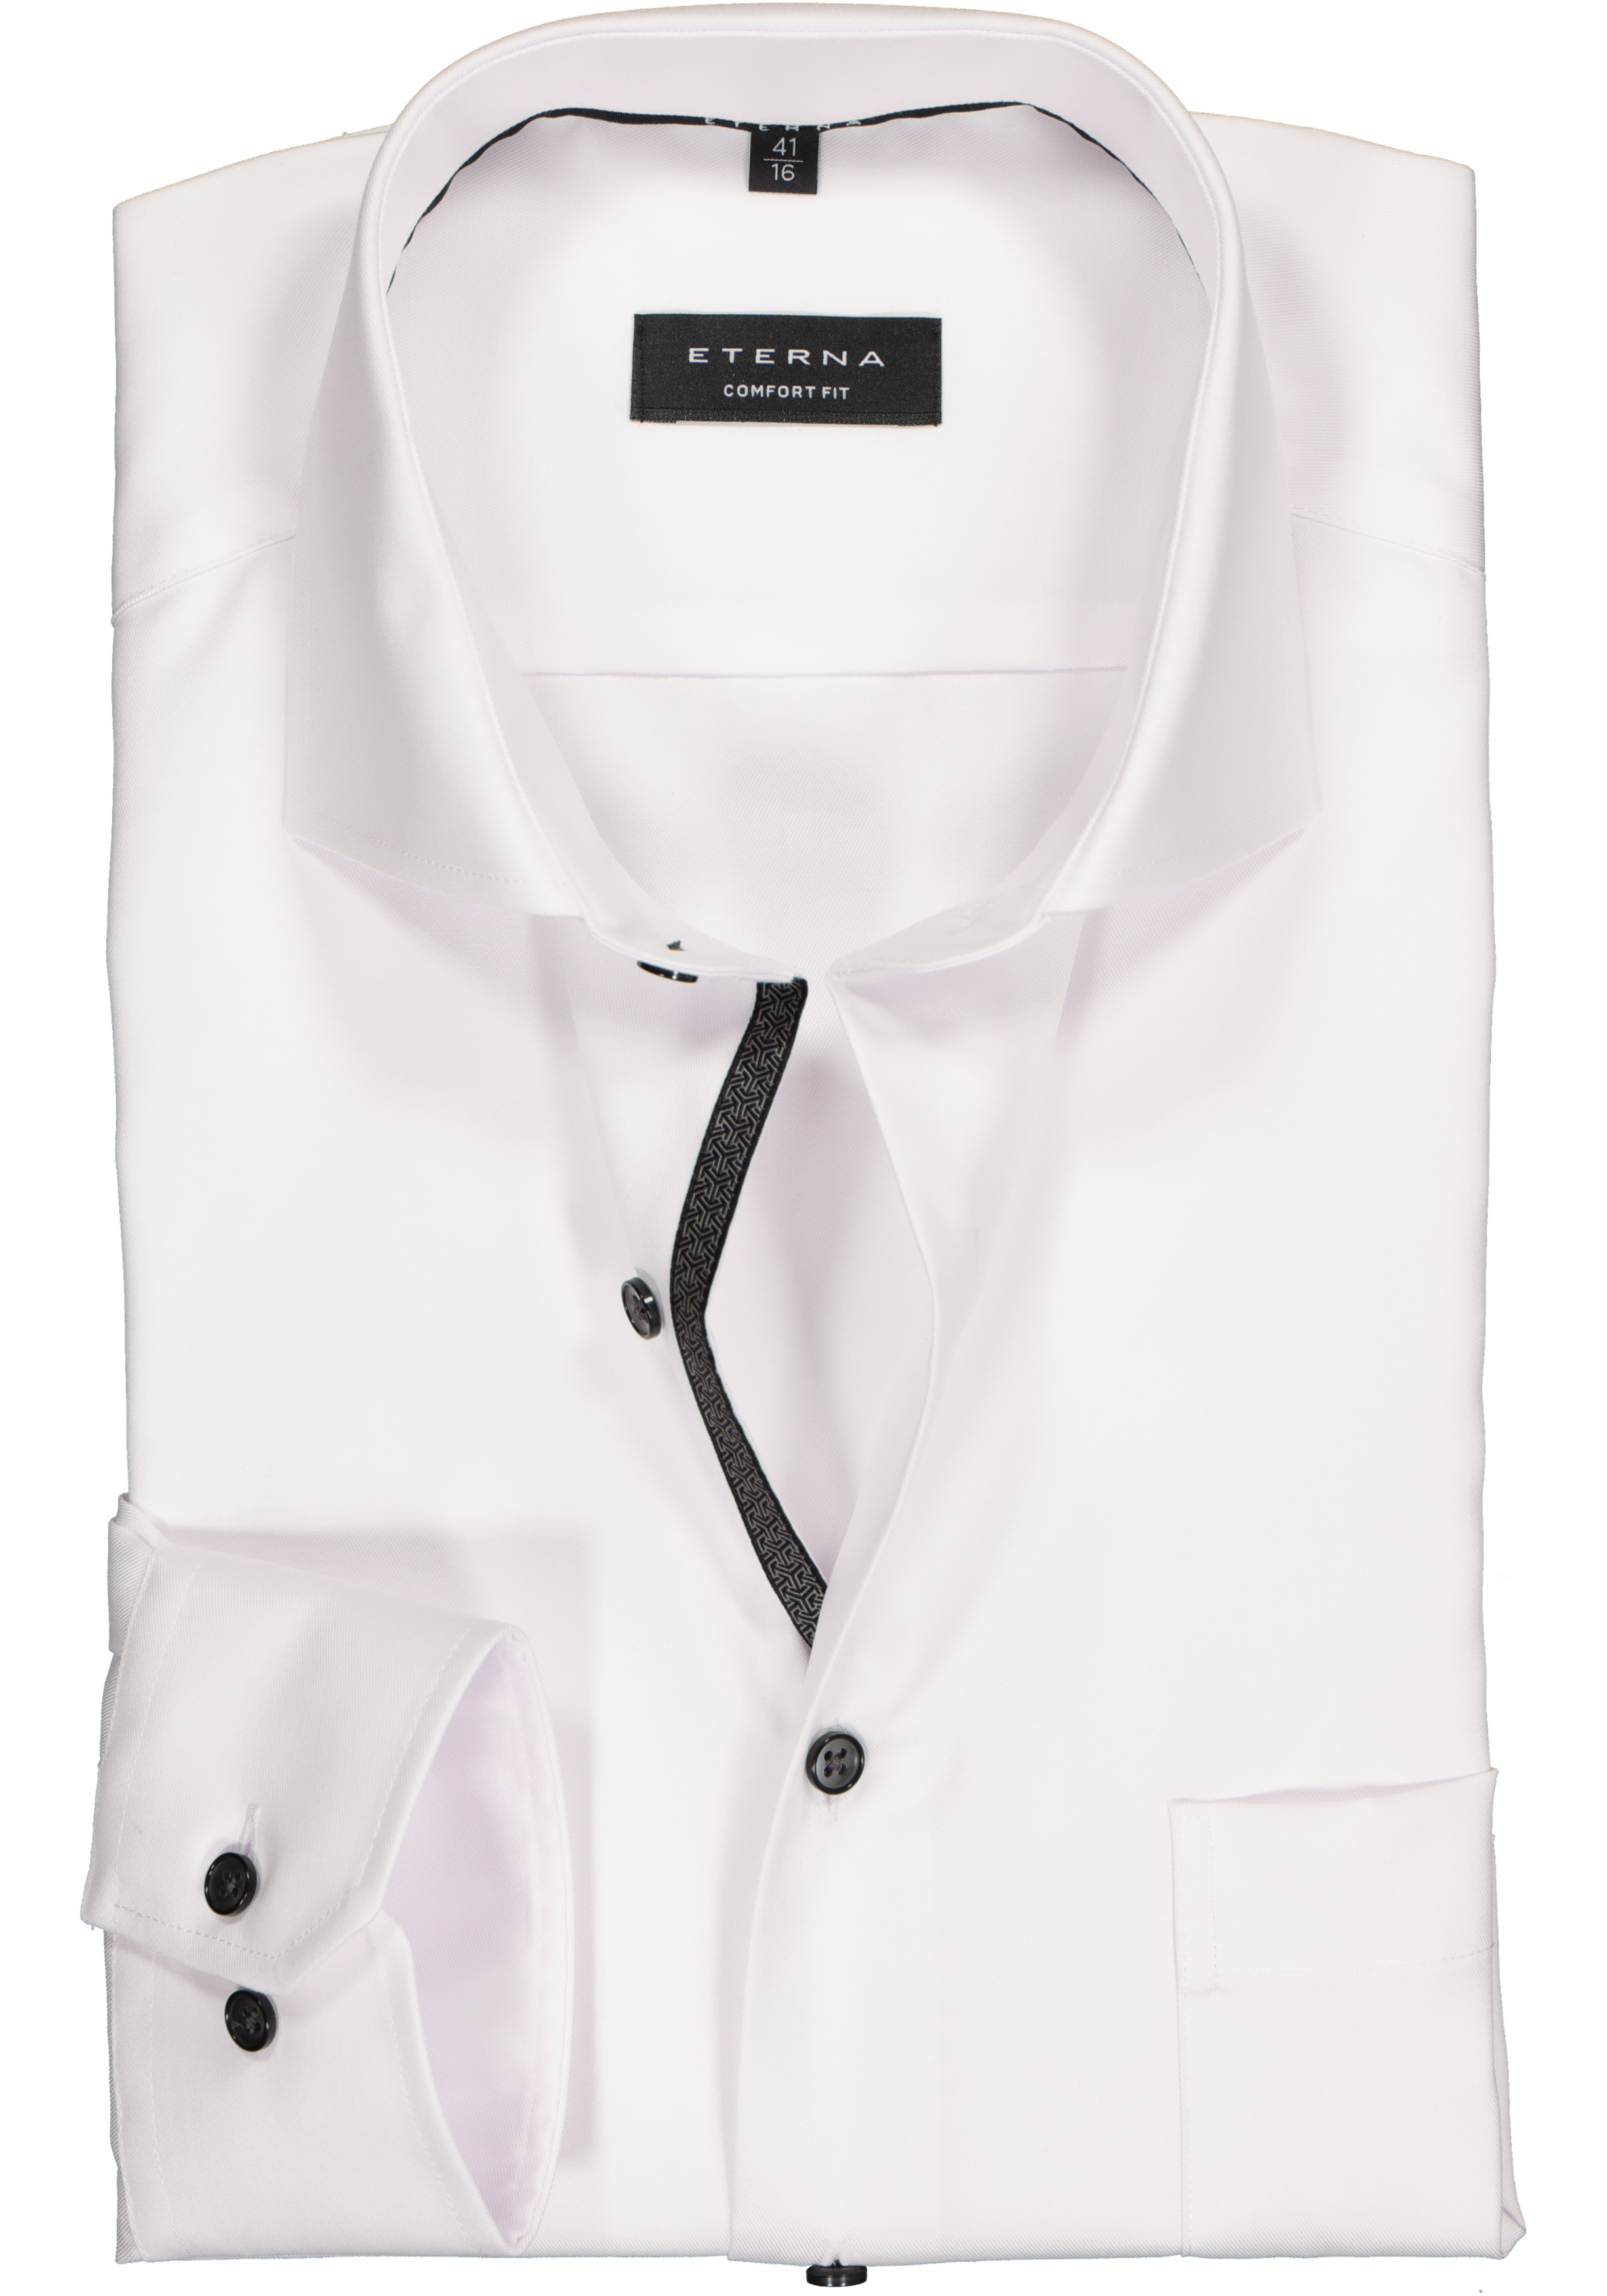 ETERNA comfort fit overhemd, niet doorschijnend twill heren overhemd, wit (zwart contrast)